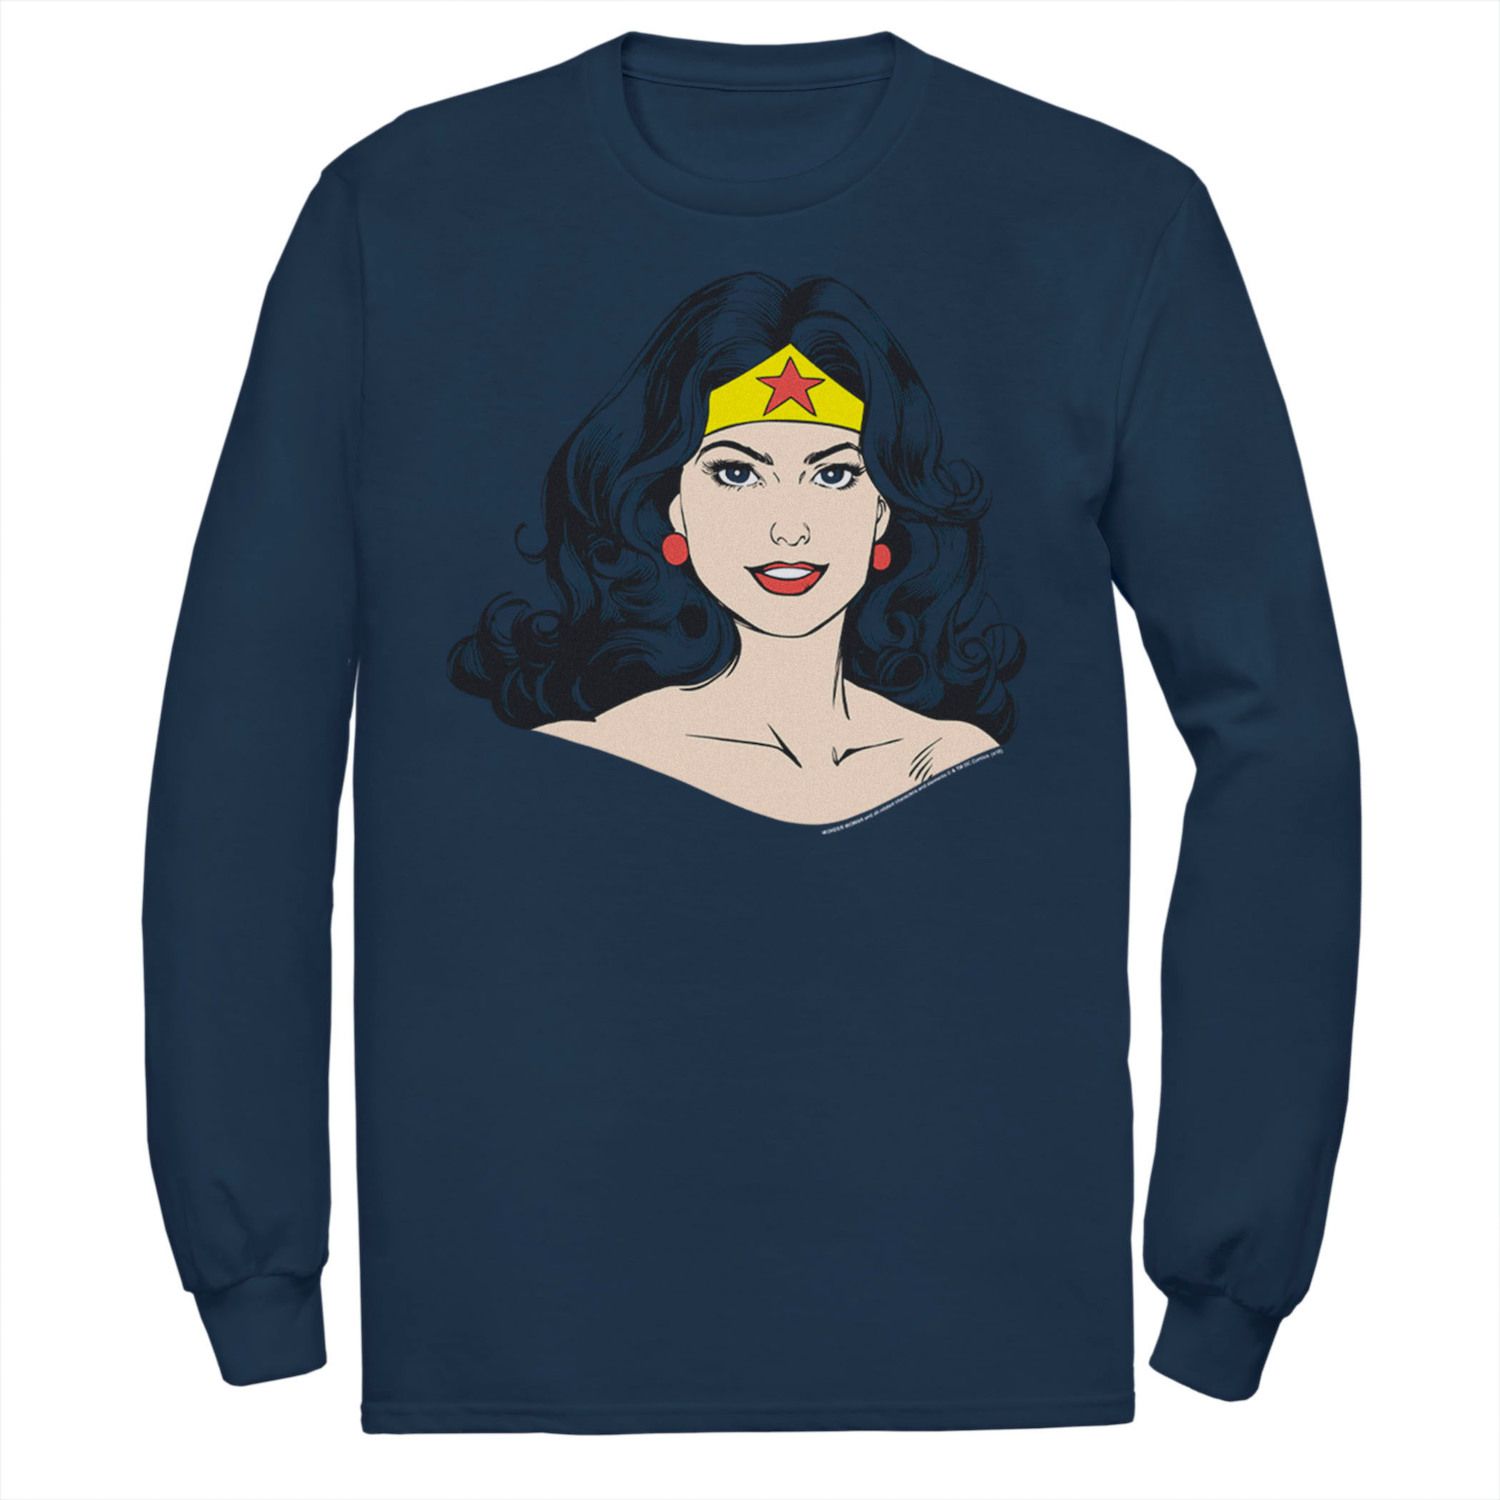 цена Мужская футболка DC Comics Wonder Woman с большим лицом и портретом